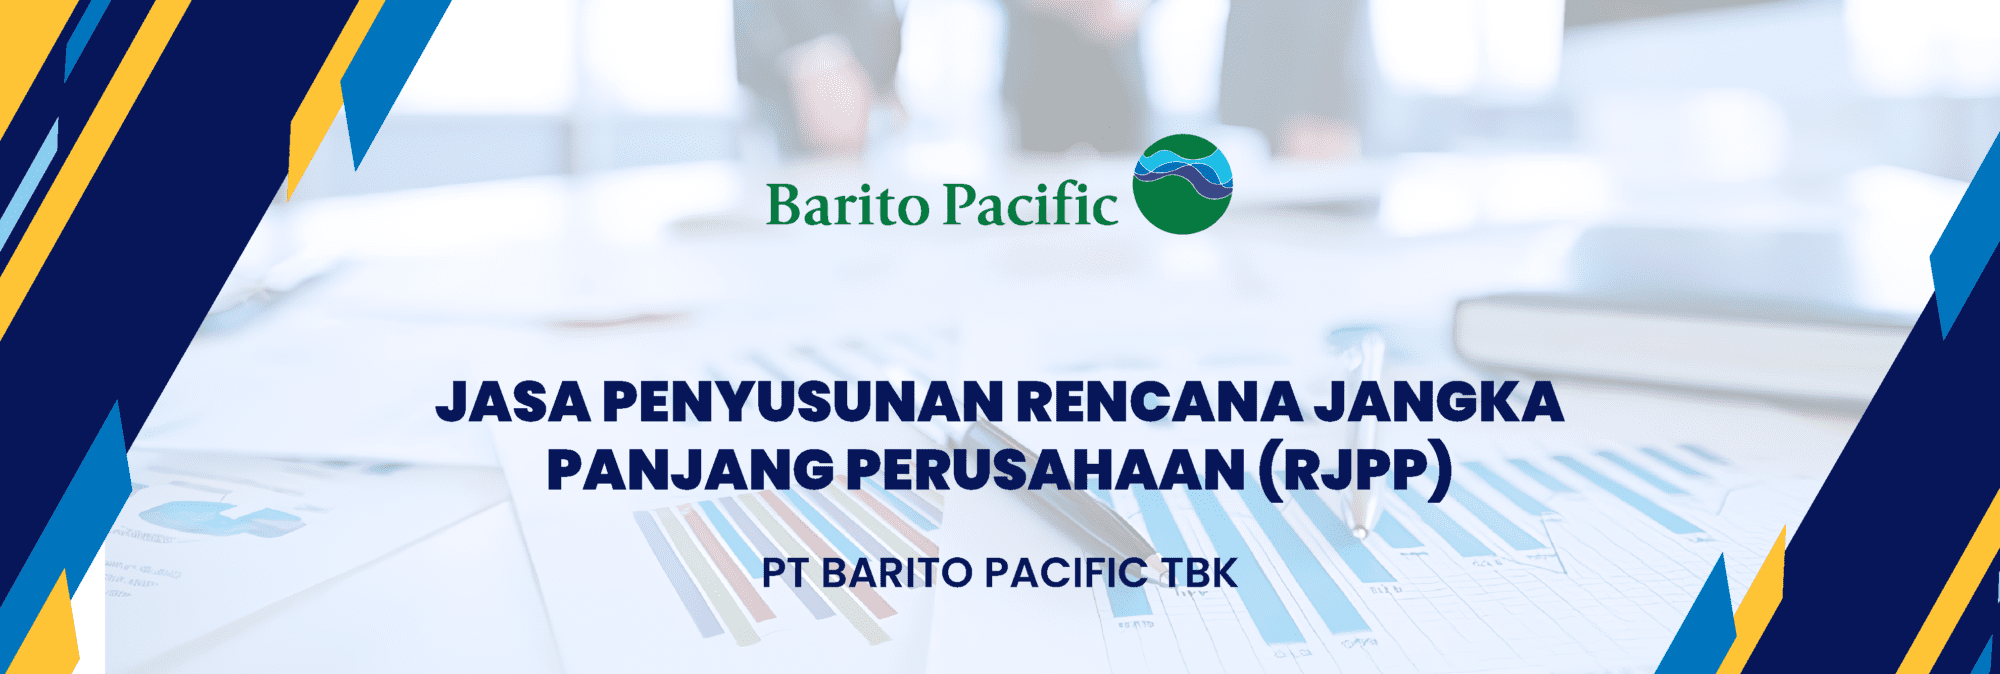 RJPP PT Barito Pacific